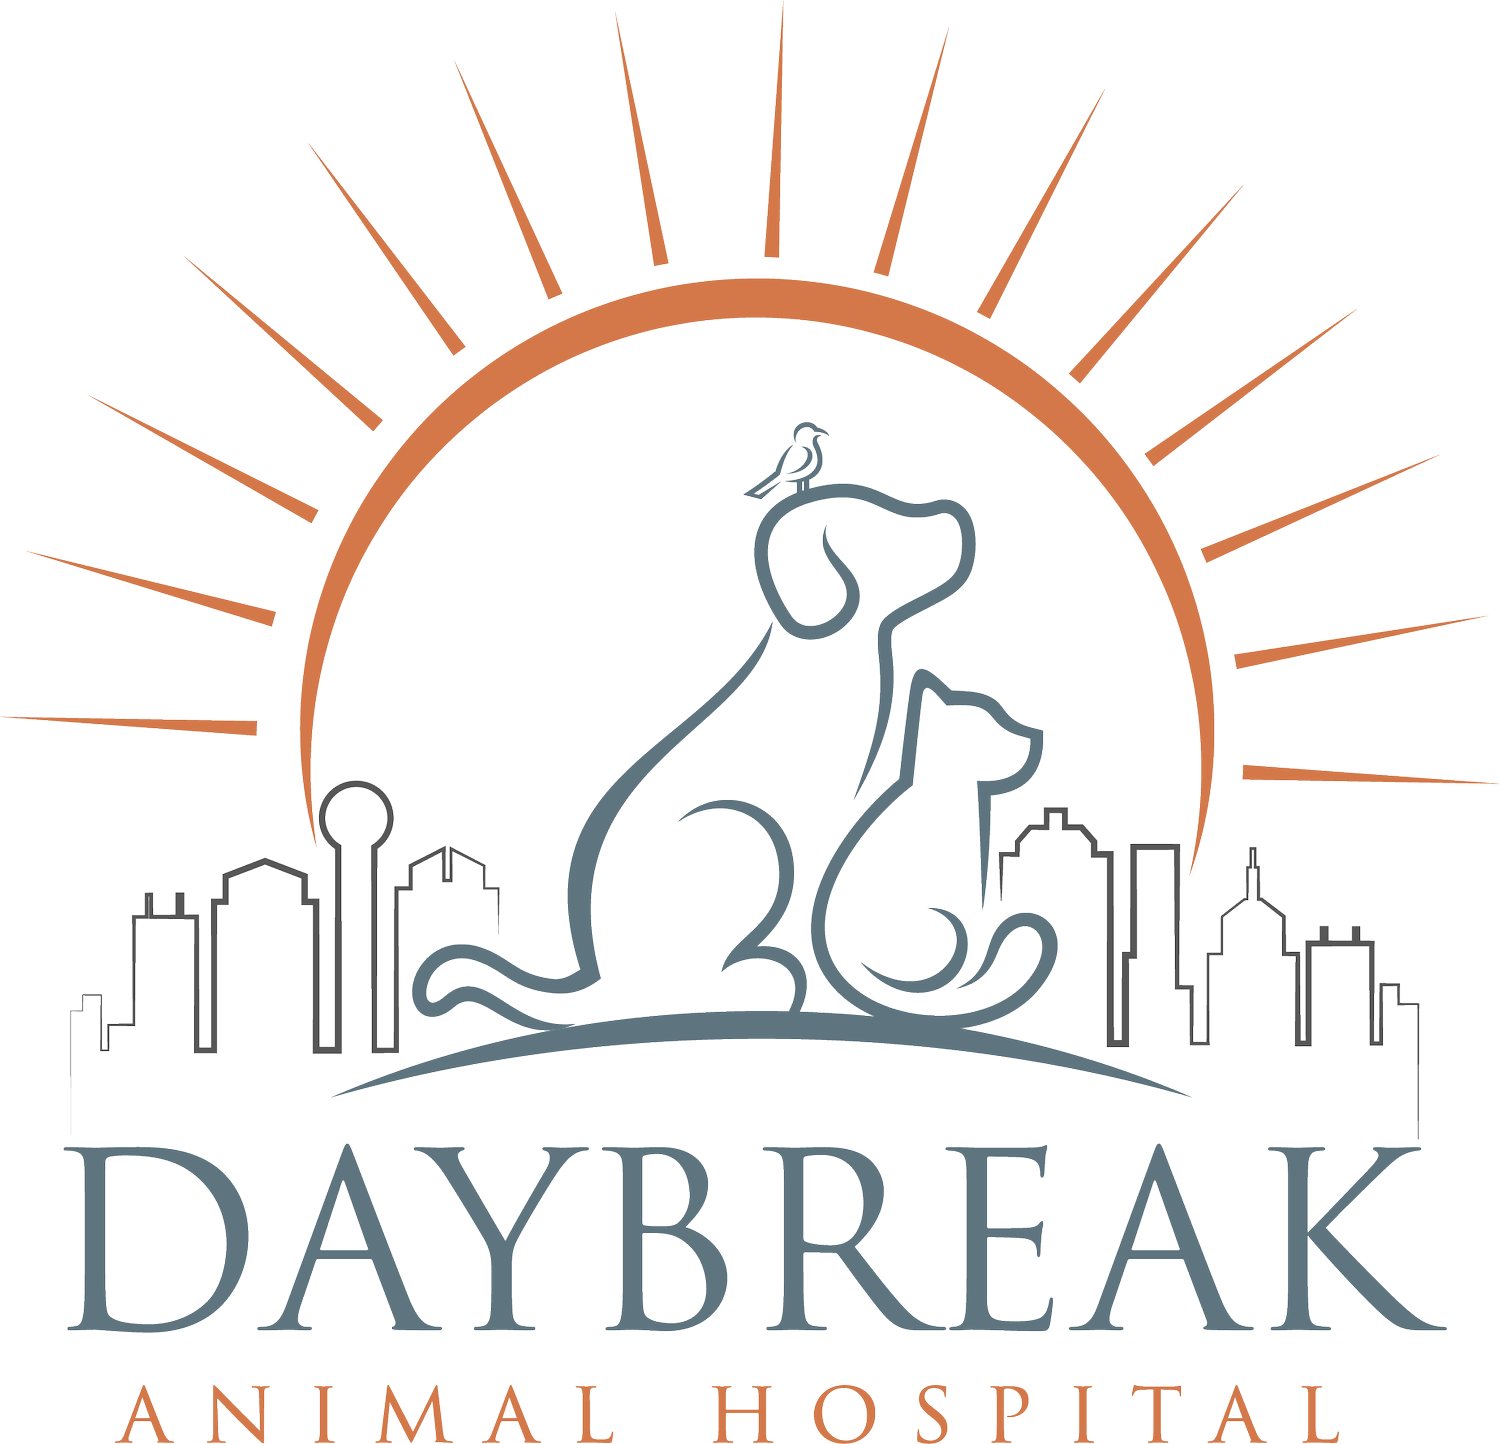 Daybreak Animal Hospital